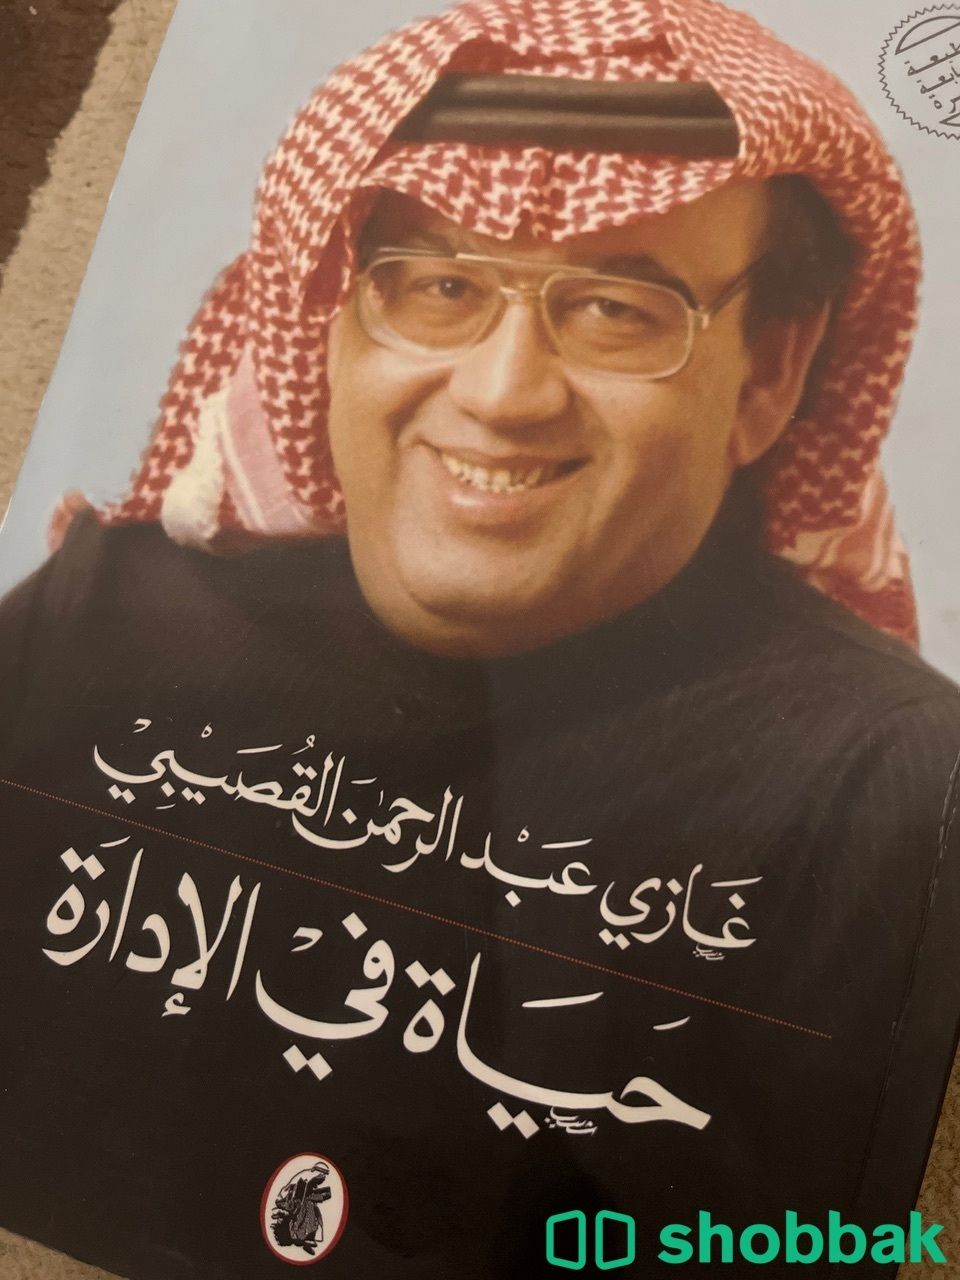 كتاب عن سيرة الوزير غازي القصيبي  Shobbak Saudi Arabia